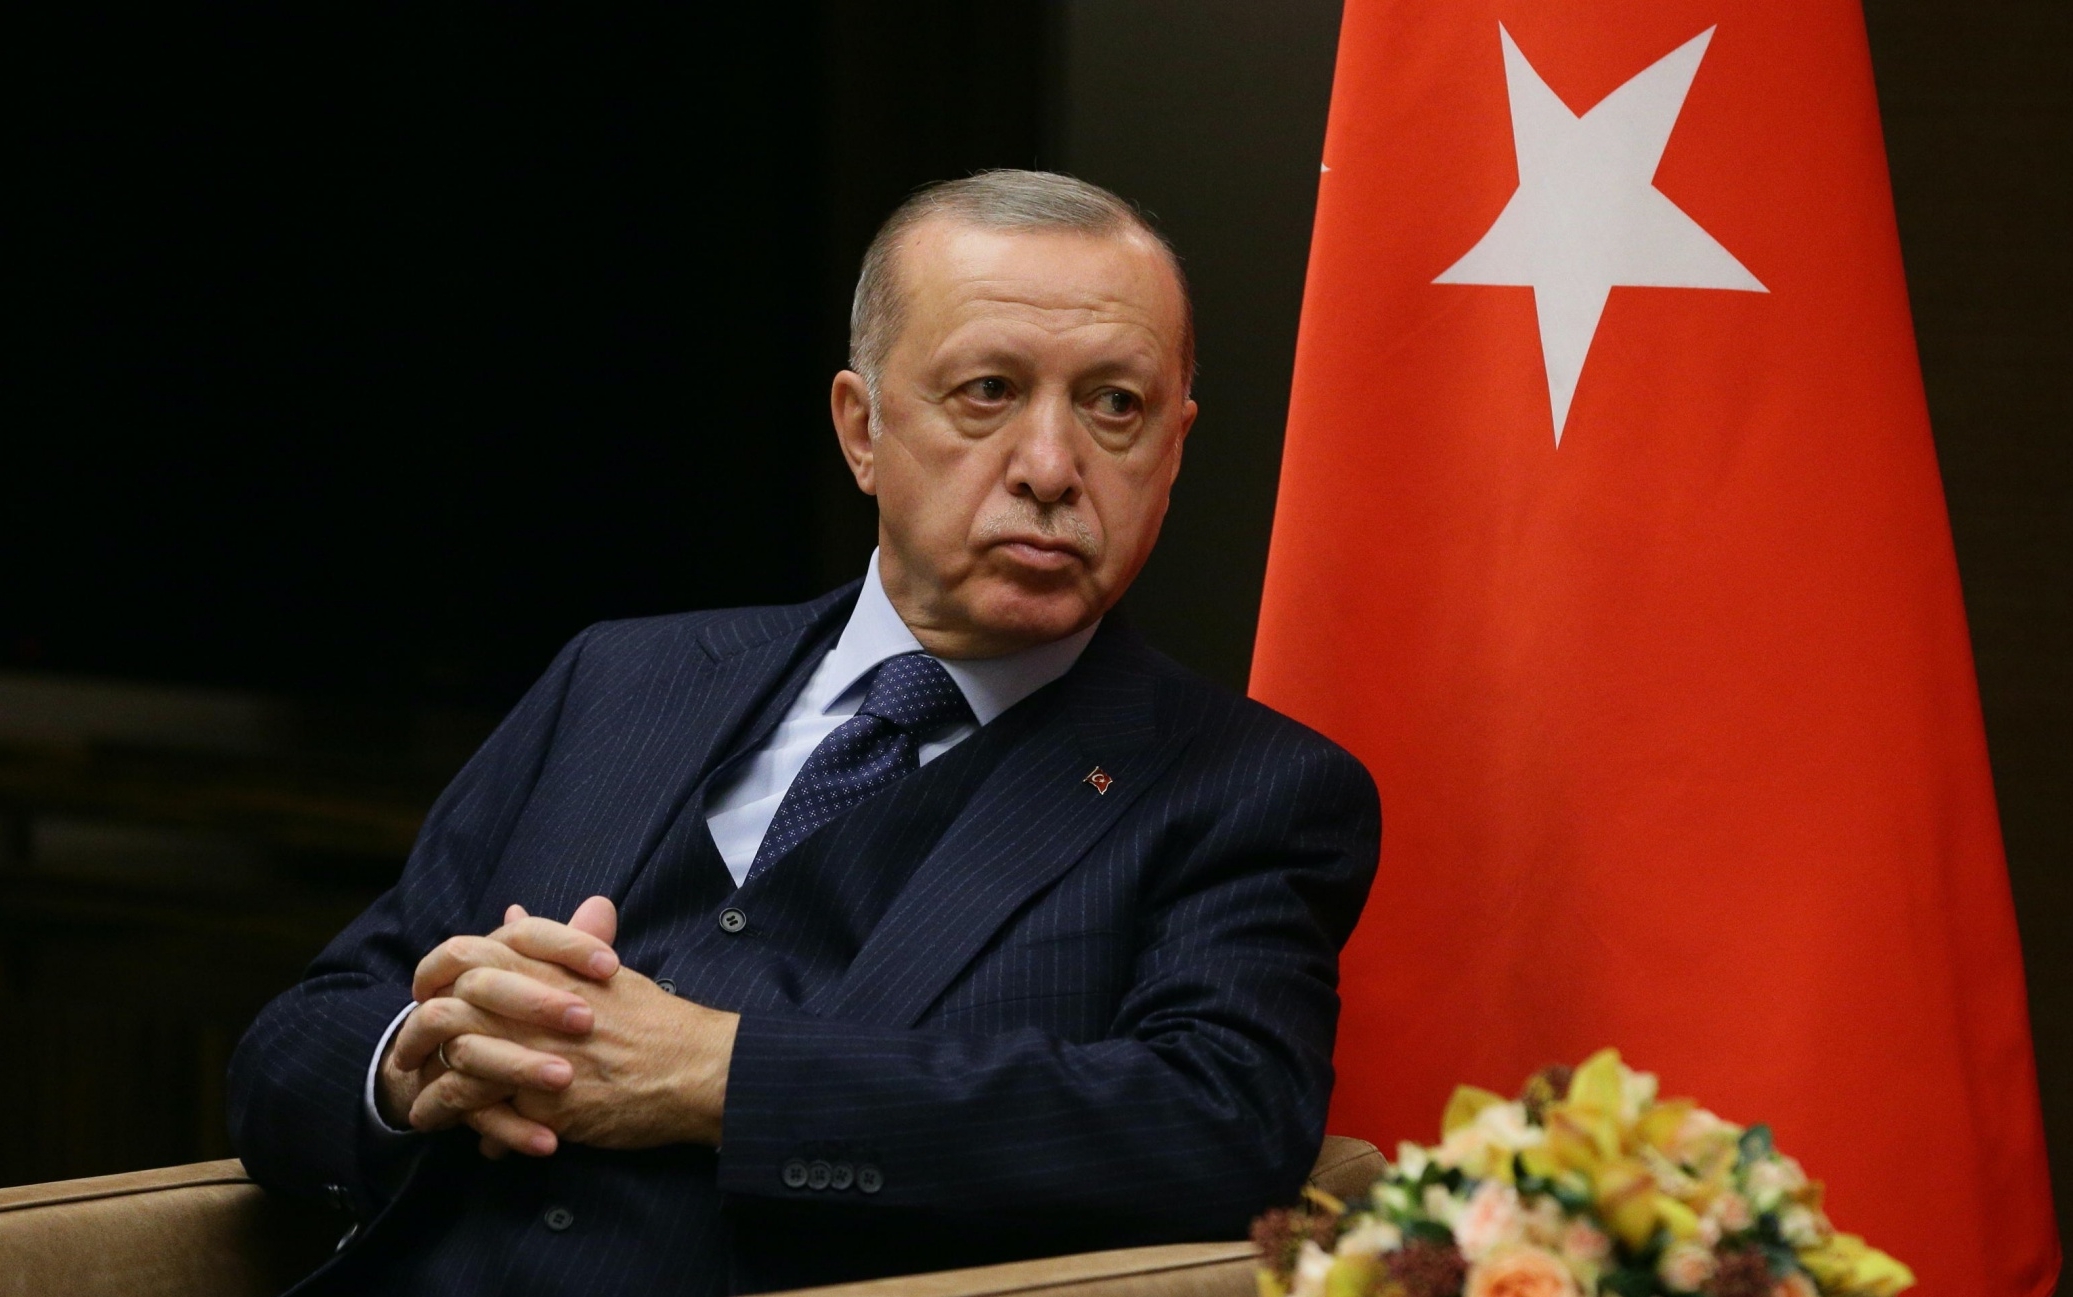 Erdogan se la prende anche con la Grecia: "Deve smetterla di armare le isole dell'Egeo"